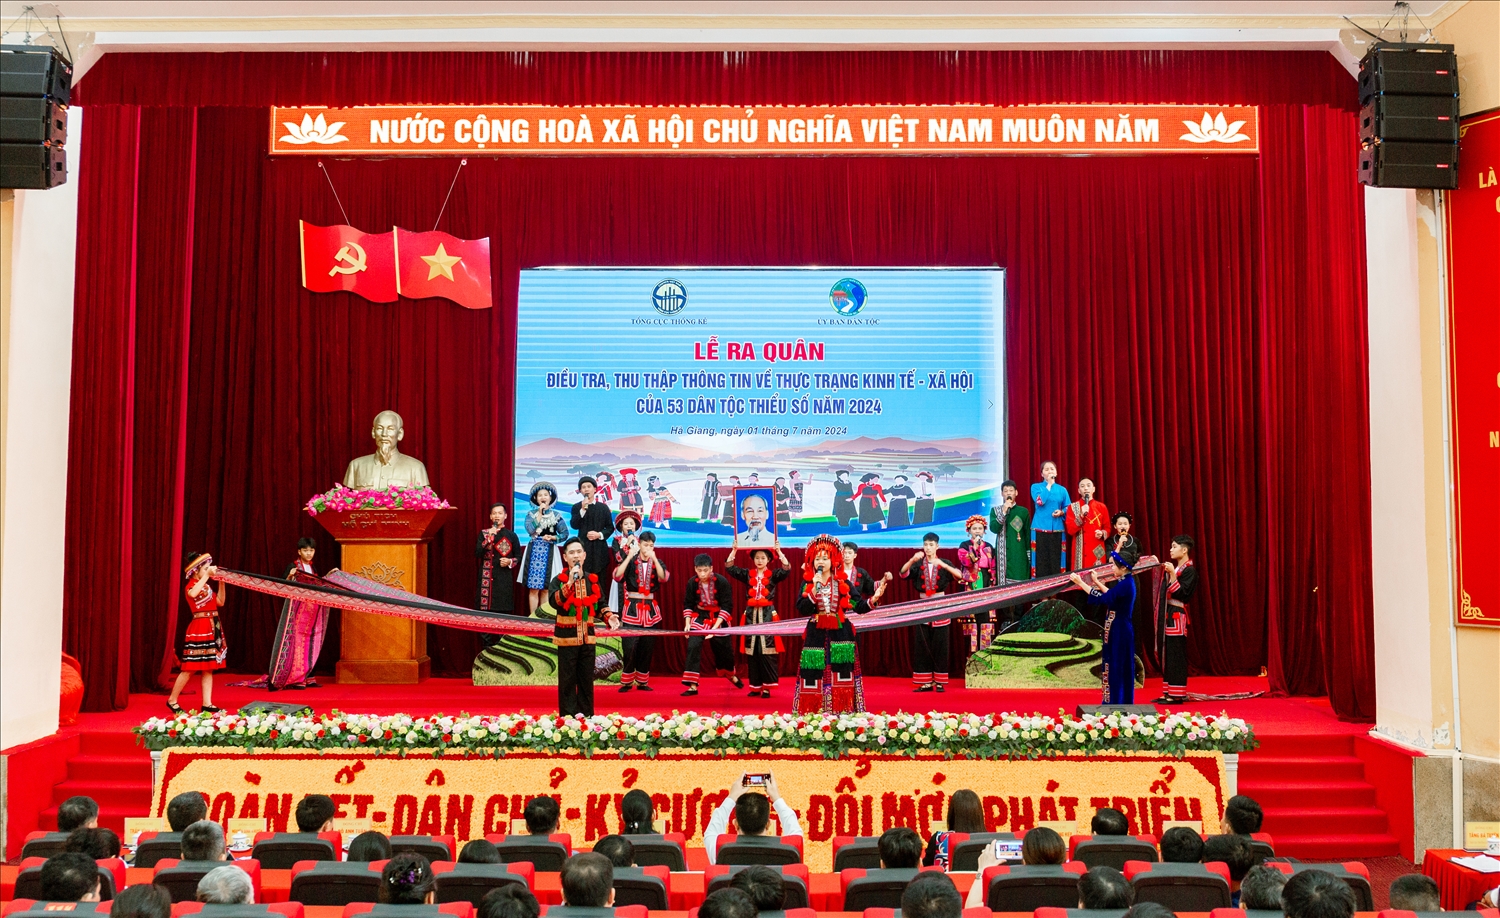  Lễ ra quân quân điều tra, thu thập thông tin về thực trạng kinh tế - xã hội 53 dân tộc thiểu số năm 2024 tại tỉnh Hà Giang được tổ chức trang trọng với sự tham gia của các vụ, đơn vị trực thuộc UBDT, TCTK; điều tra viên thống kê, tổ trưởng, giám sát viên cùng đại diện các sở, ngành thuộc tỉnh Hà Giang.